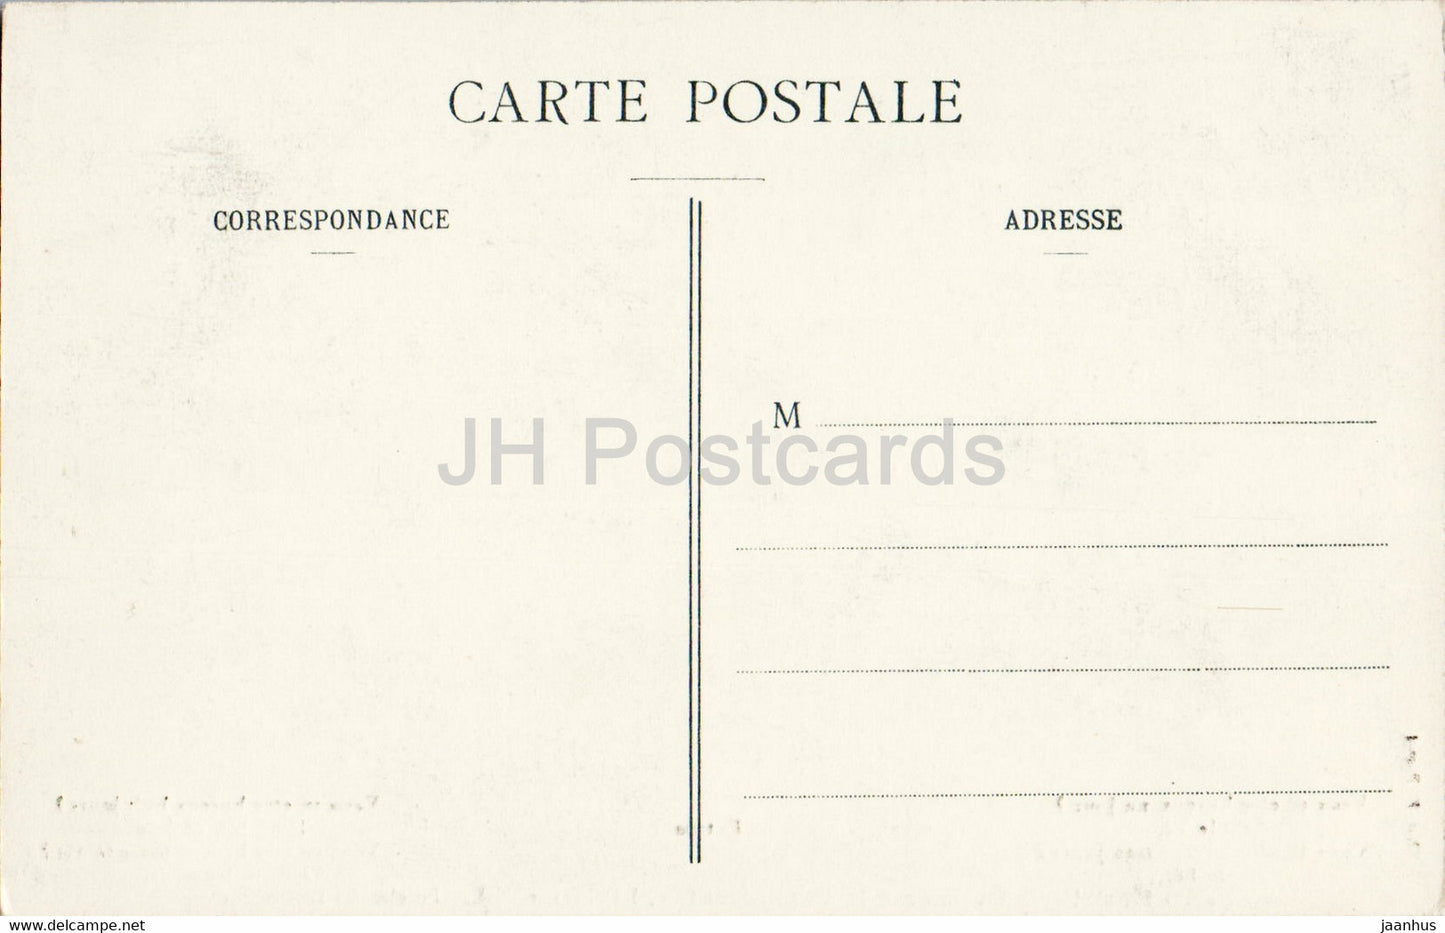 Dives Sur Mer - Hostellerie Guillaume le Conquerant - Porche des Diligences - 28 - old postcard - France - unused